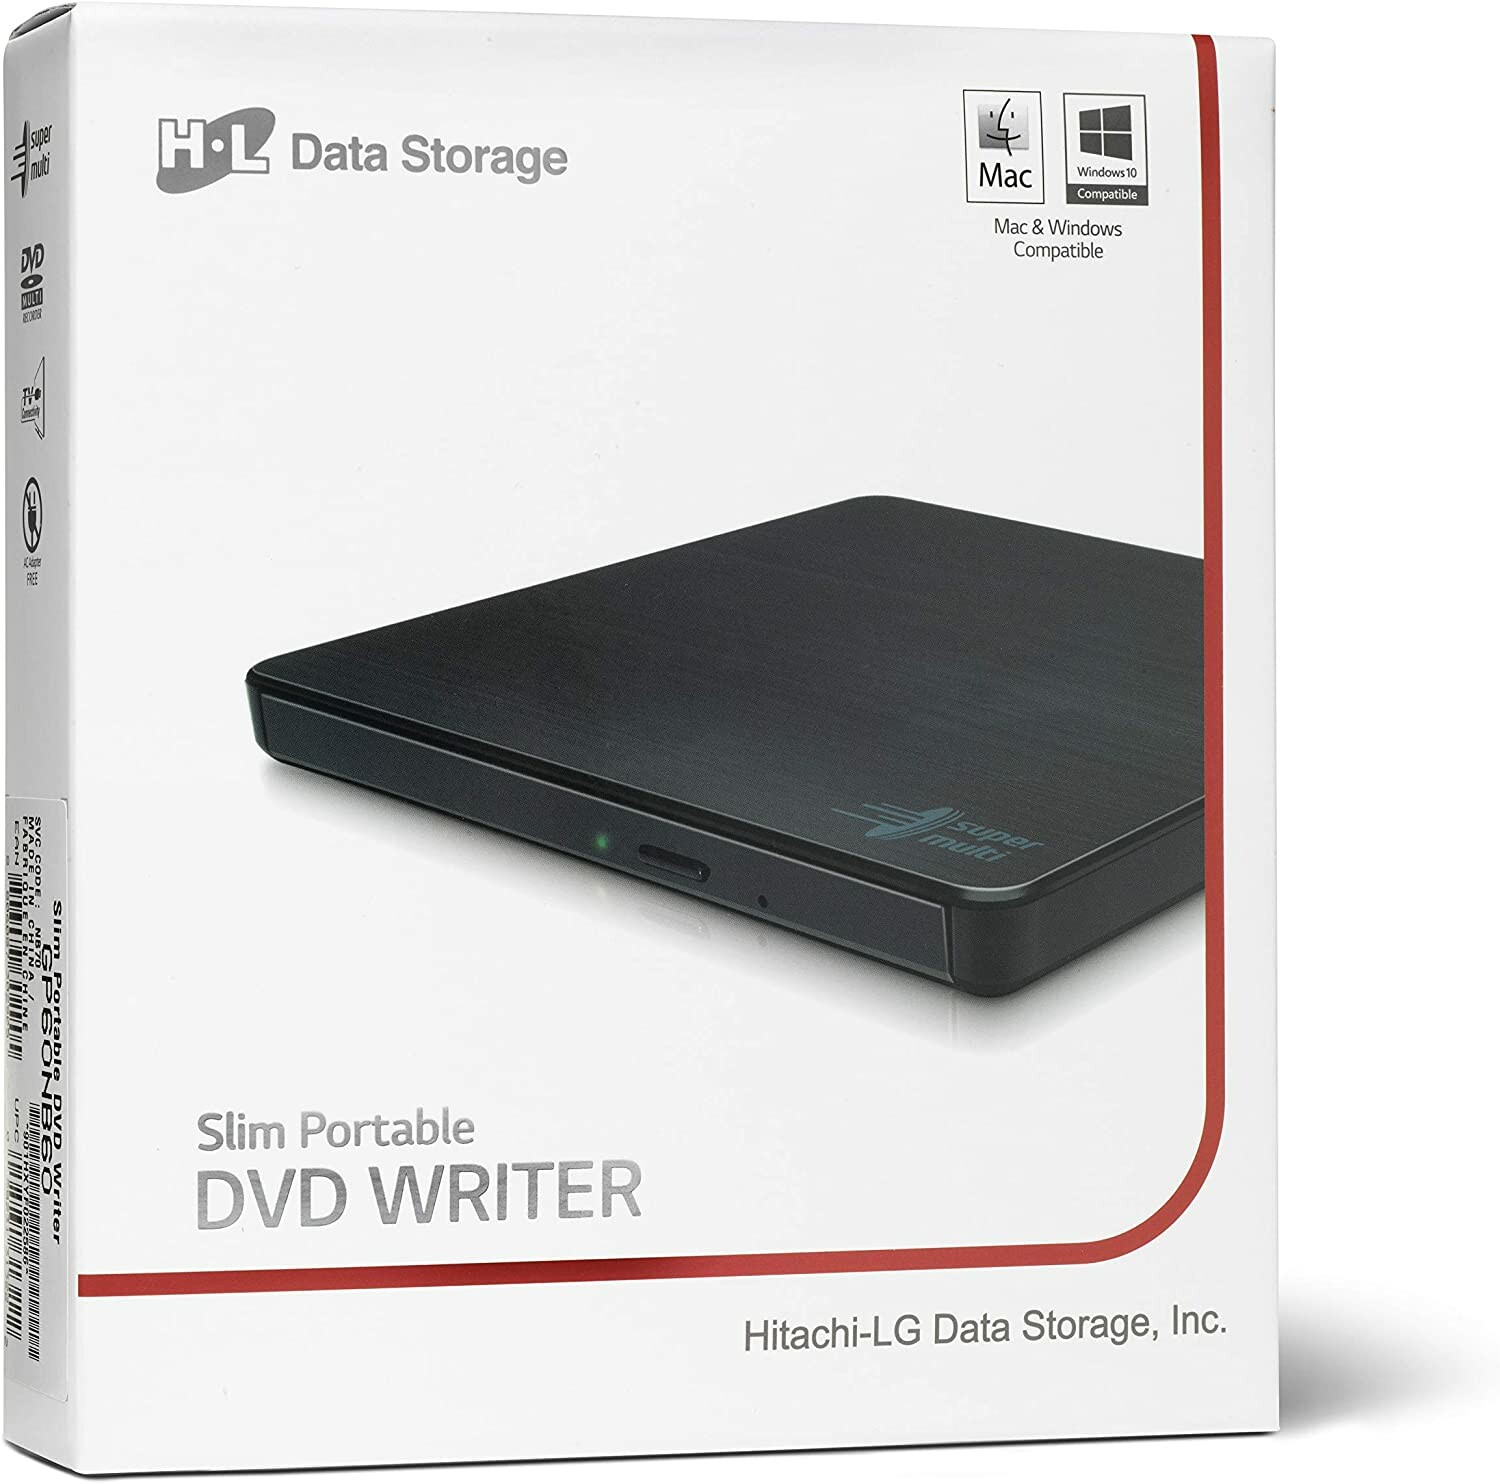 Lg dp132h lecteur dvd/blu-ray portable lecteur dvd portable noir